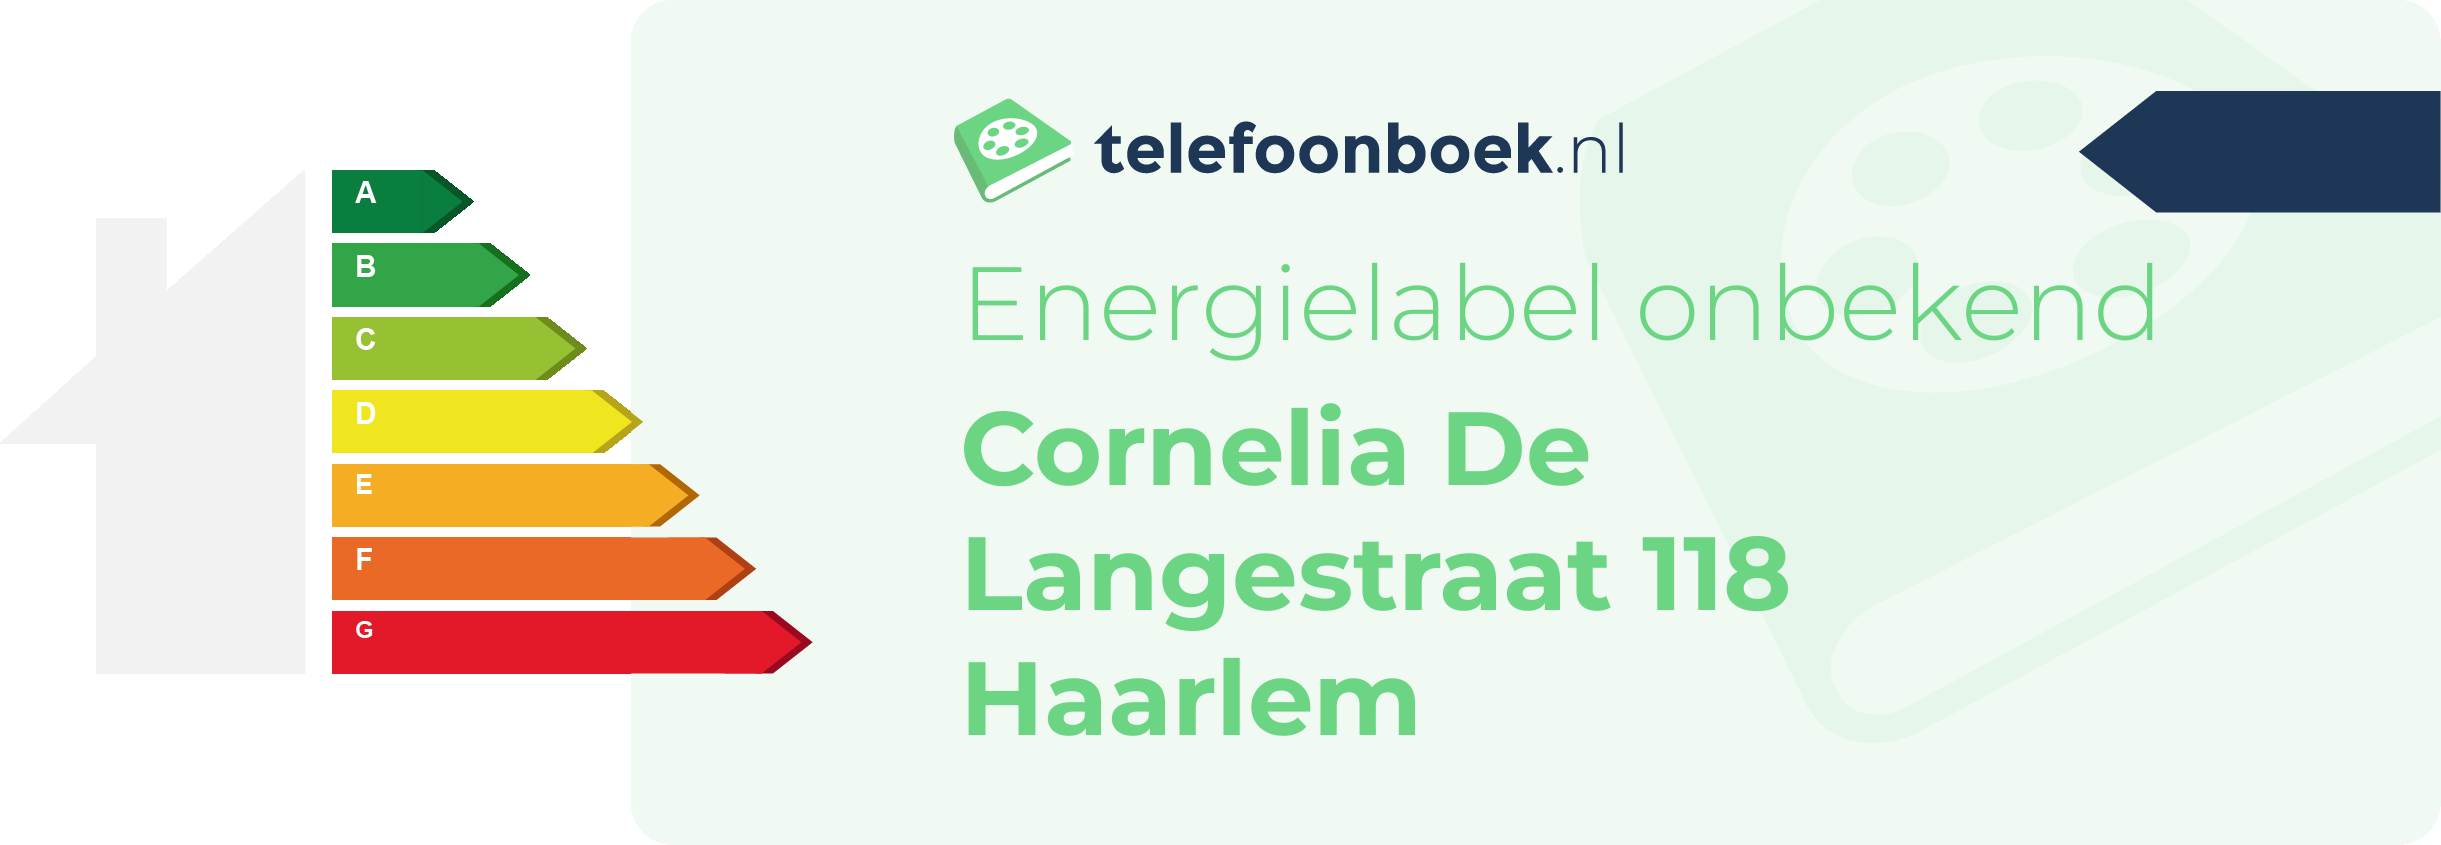 Energielabel Cornelia De Langestraat 118 Haarlem